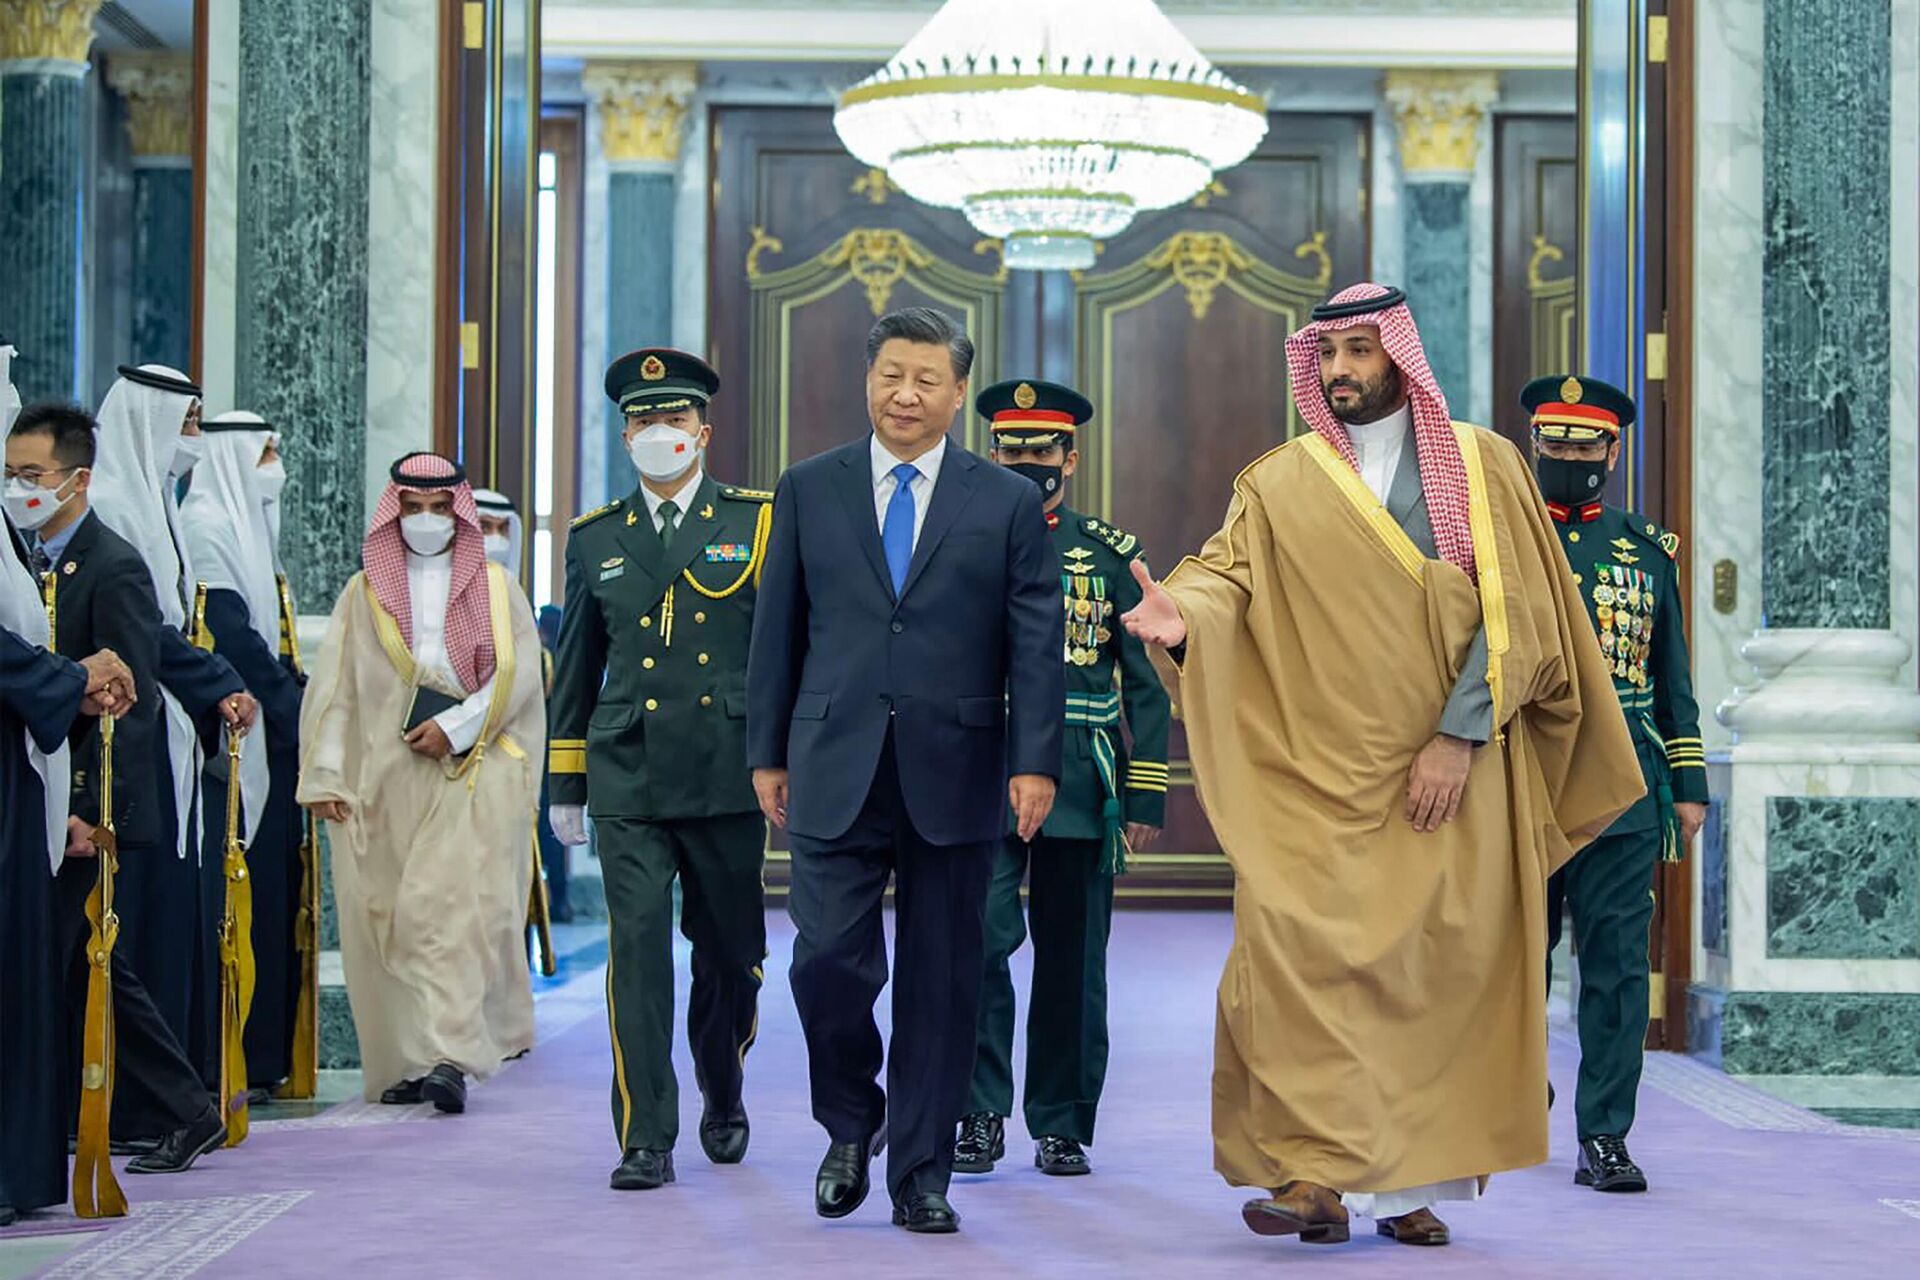 Kineski predsednik Si Đinping sa saudijskim princom Muhamedom bin Salmanom u Rijadu. - Sputnik Srbija, 1920, 04.04.2023